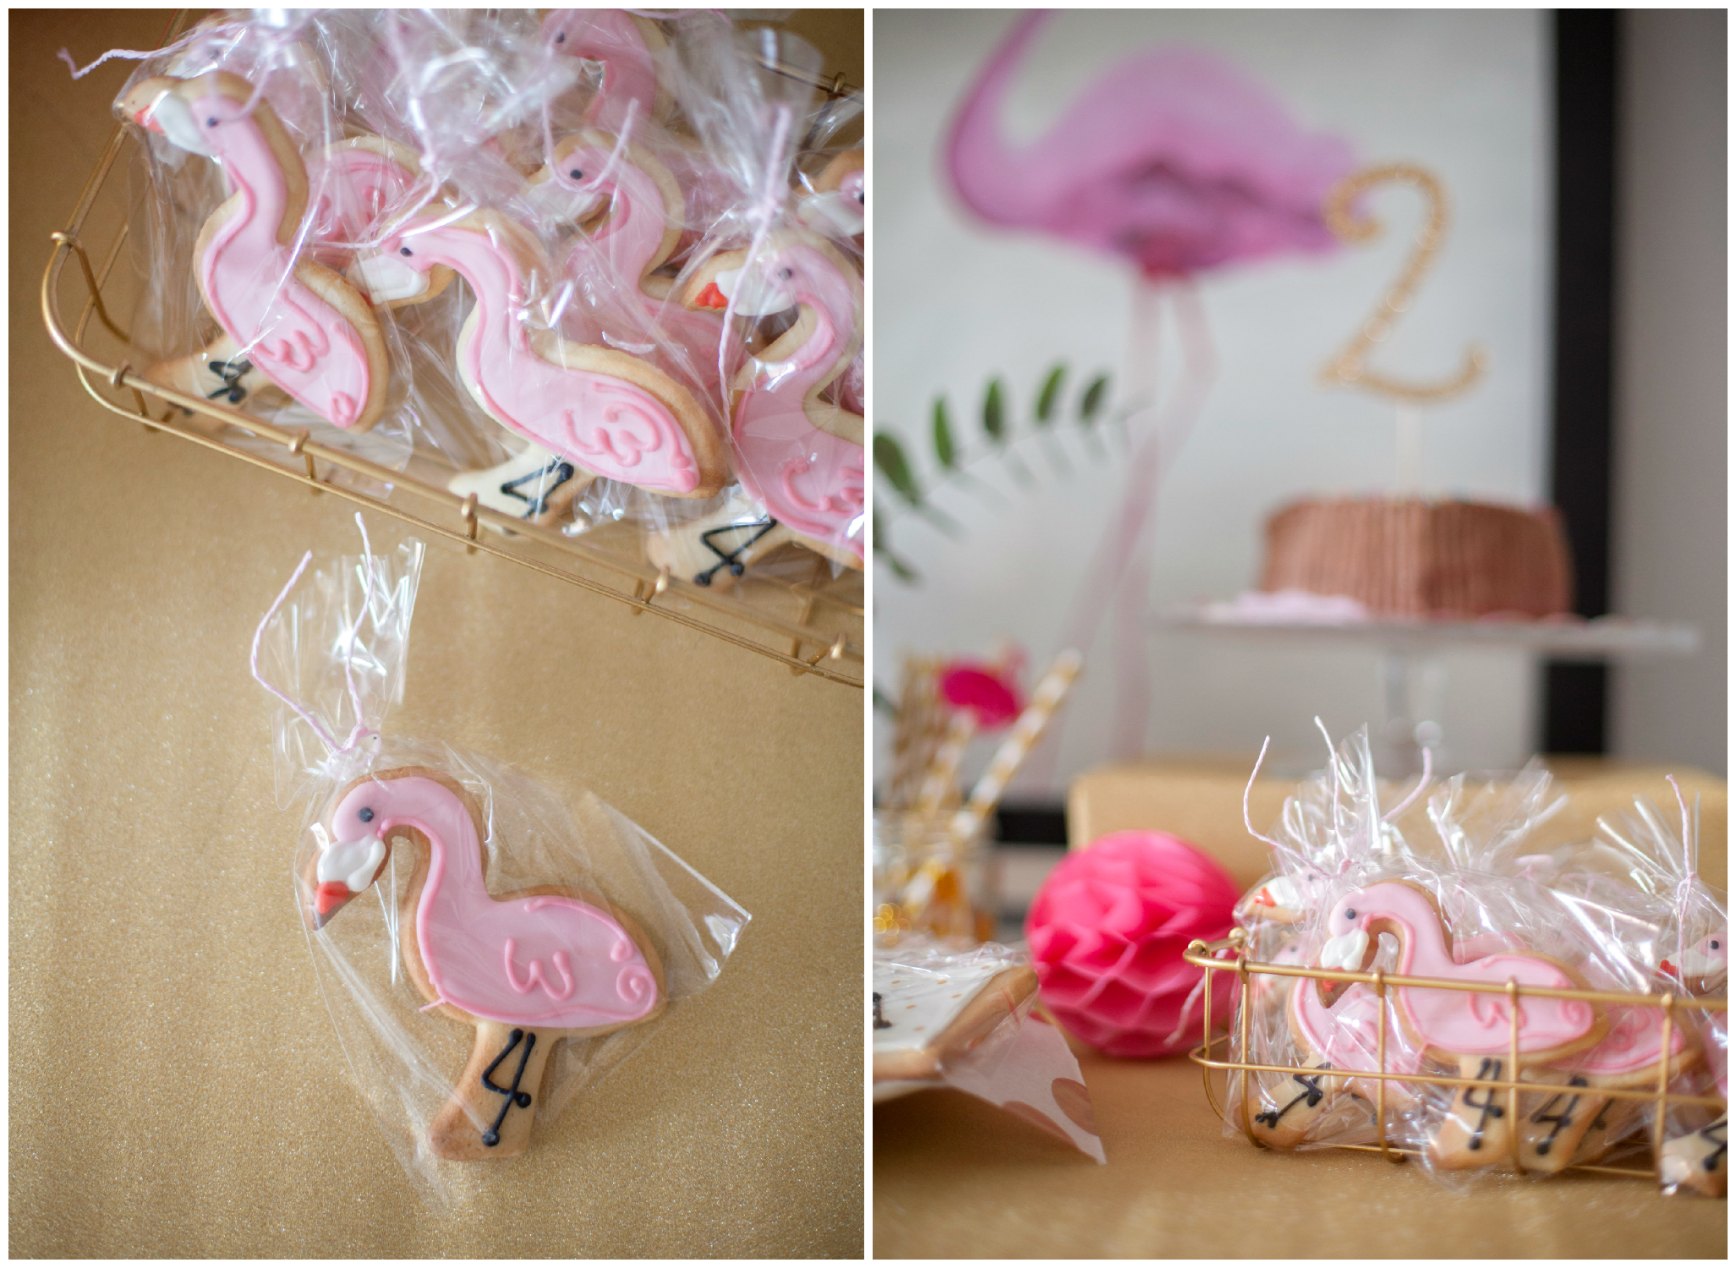 fiesta de cumpleaños con flamencos - flamingo birthday party